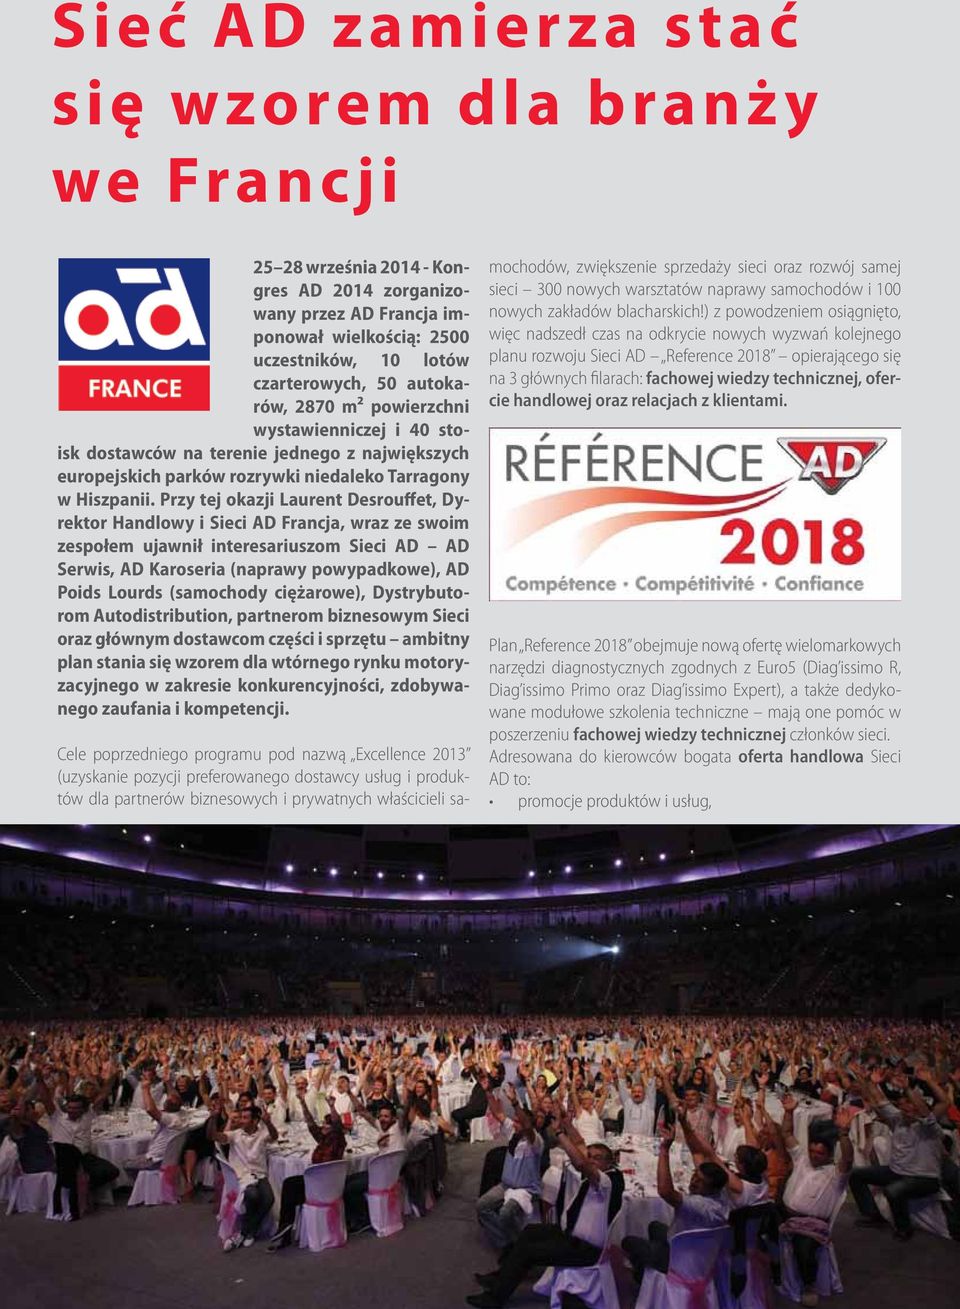 Przy tej okazji Laurent Desrouffet, Dyrektor Handlowy i Sieci AD Francja, wraz ze swoim zespołem ujawnił interesariuszom Sieci AD AD Serwis, AD Karoseria (naprawy powypadkowe), AD Poids Lourds